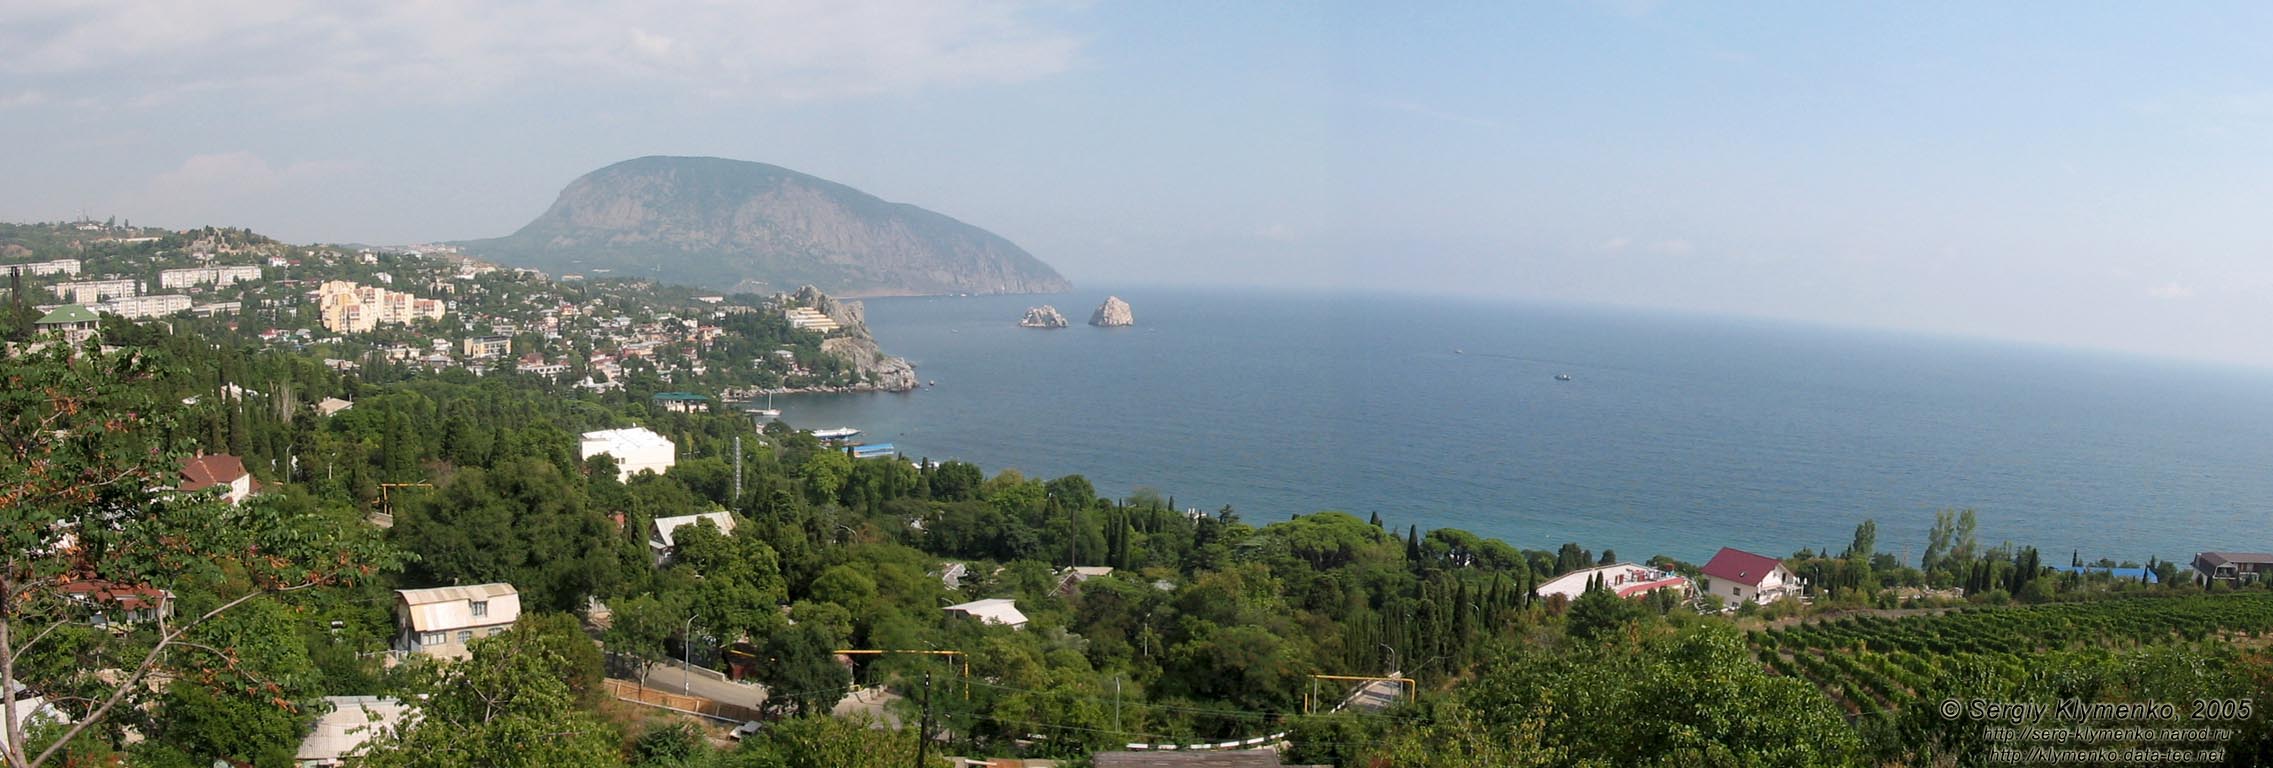 Крым. Аю-Даг («Медведь-гора») и панорама Гурзуфской бухты.